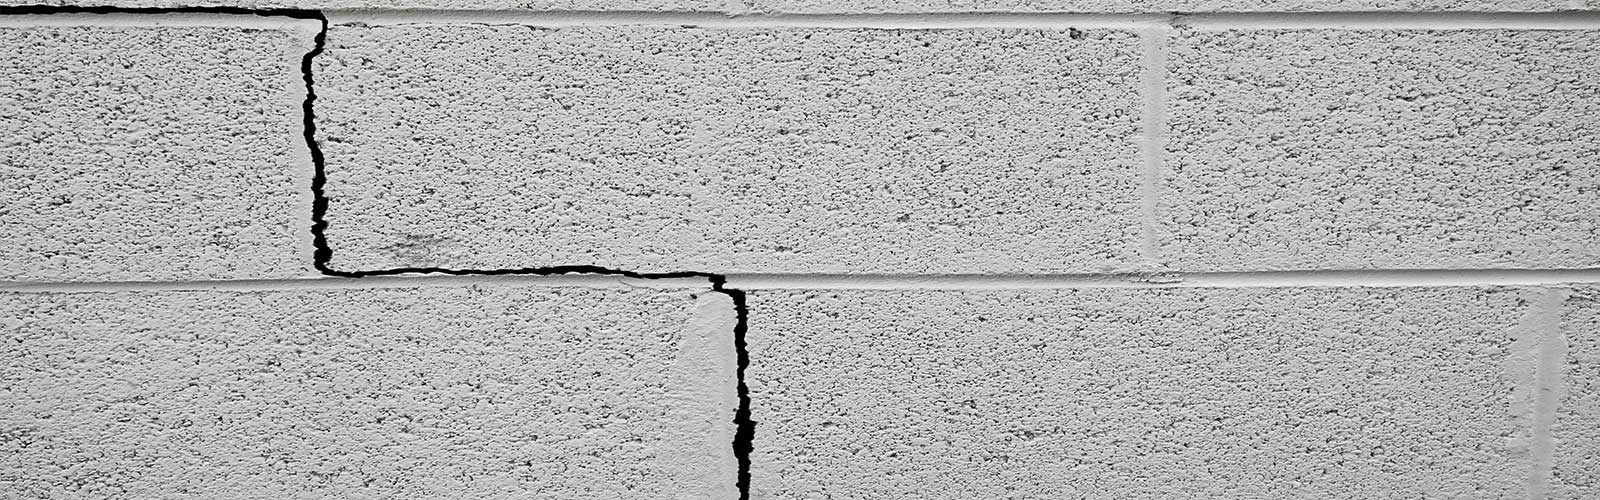 Foundation Wall Crack Repair